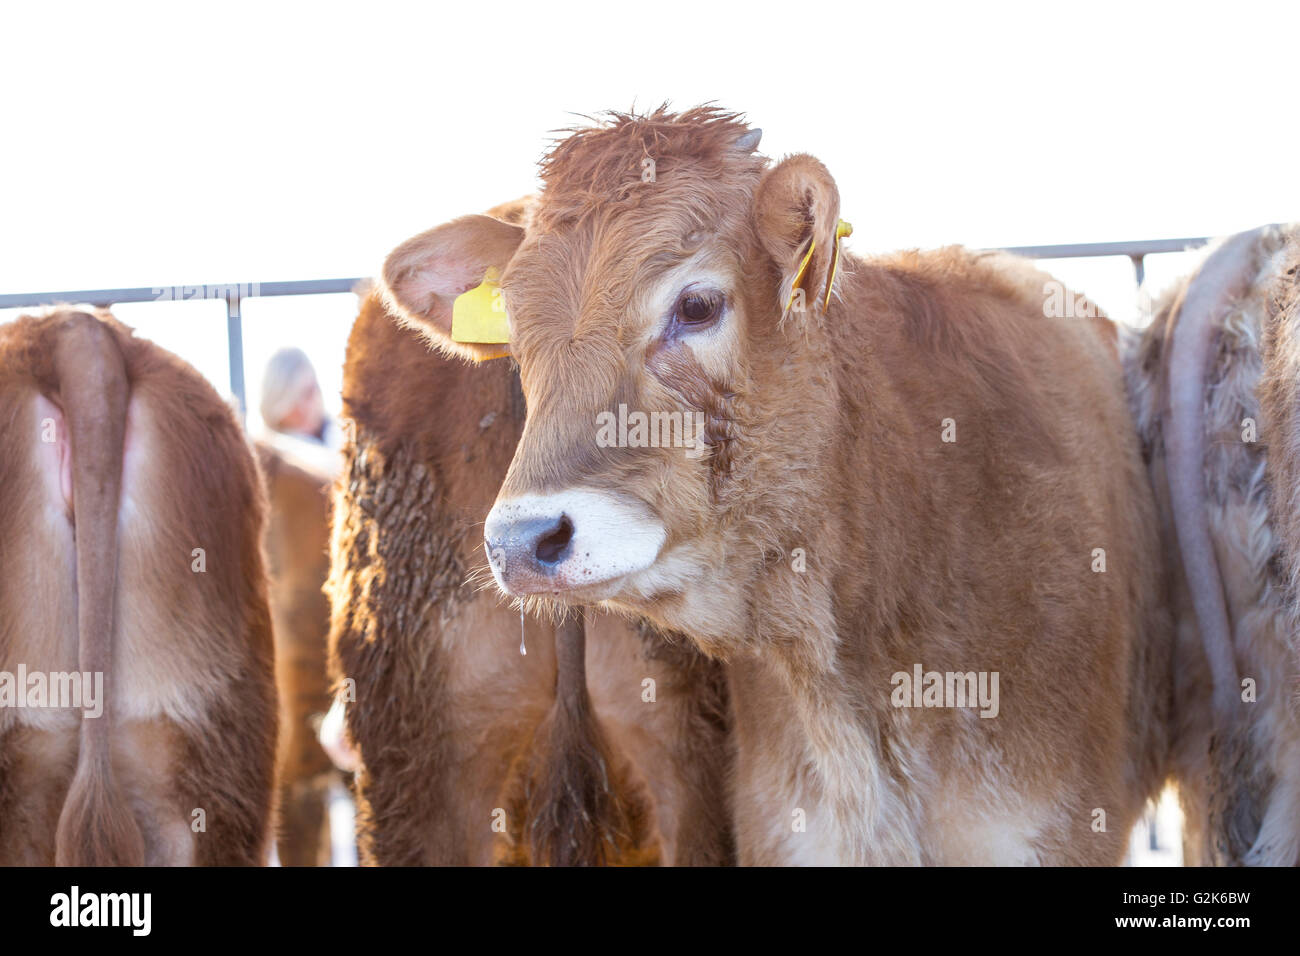 Jeune veau, Bos taurus, avec son troupeau dans la barrière Banque D'Images